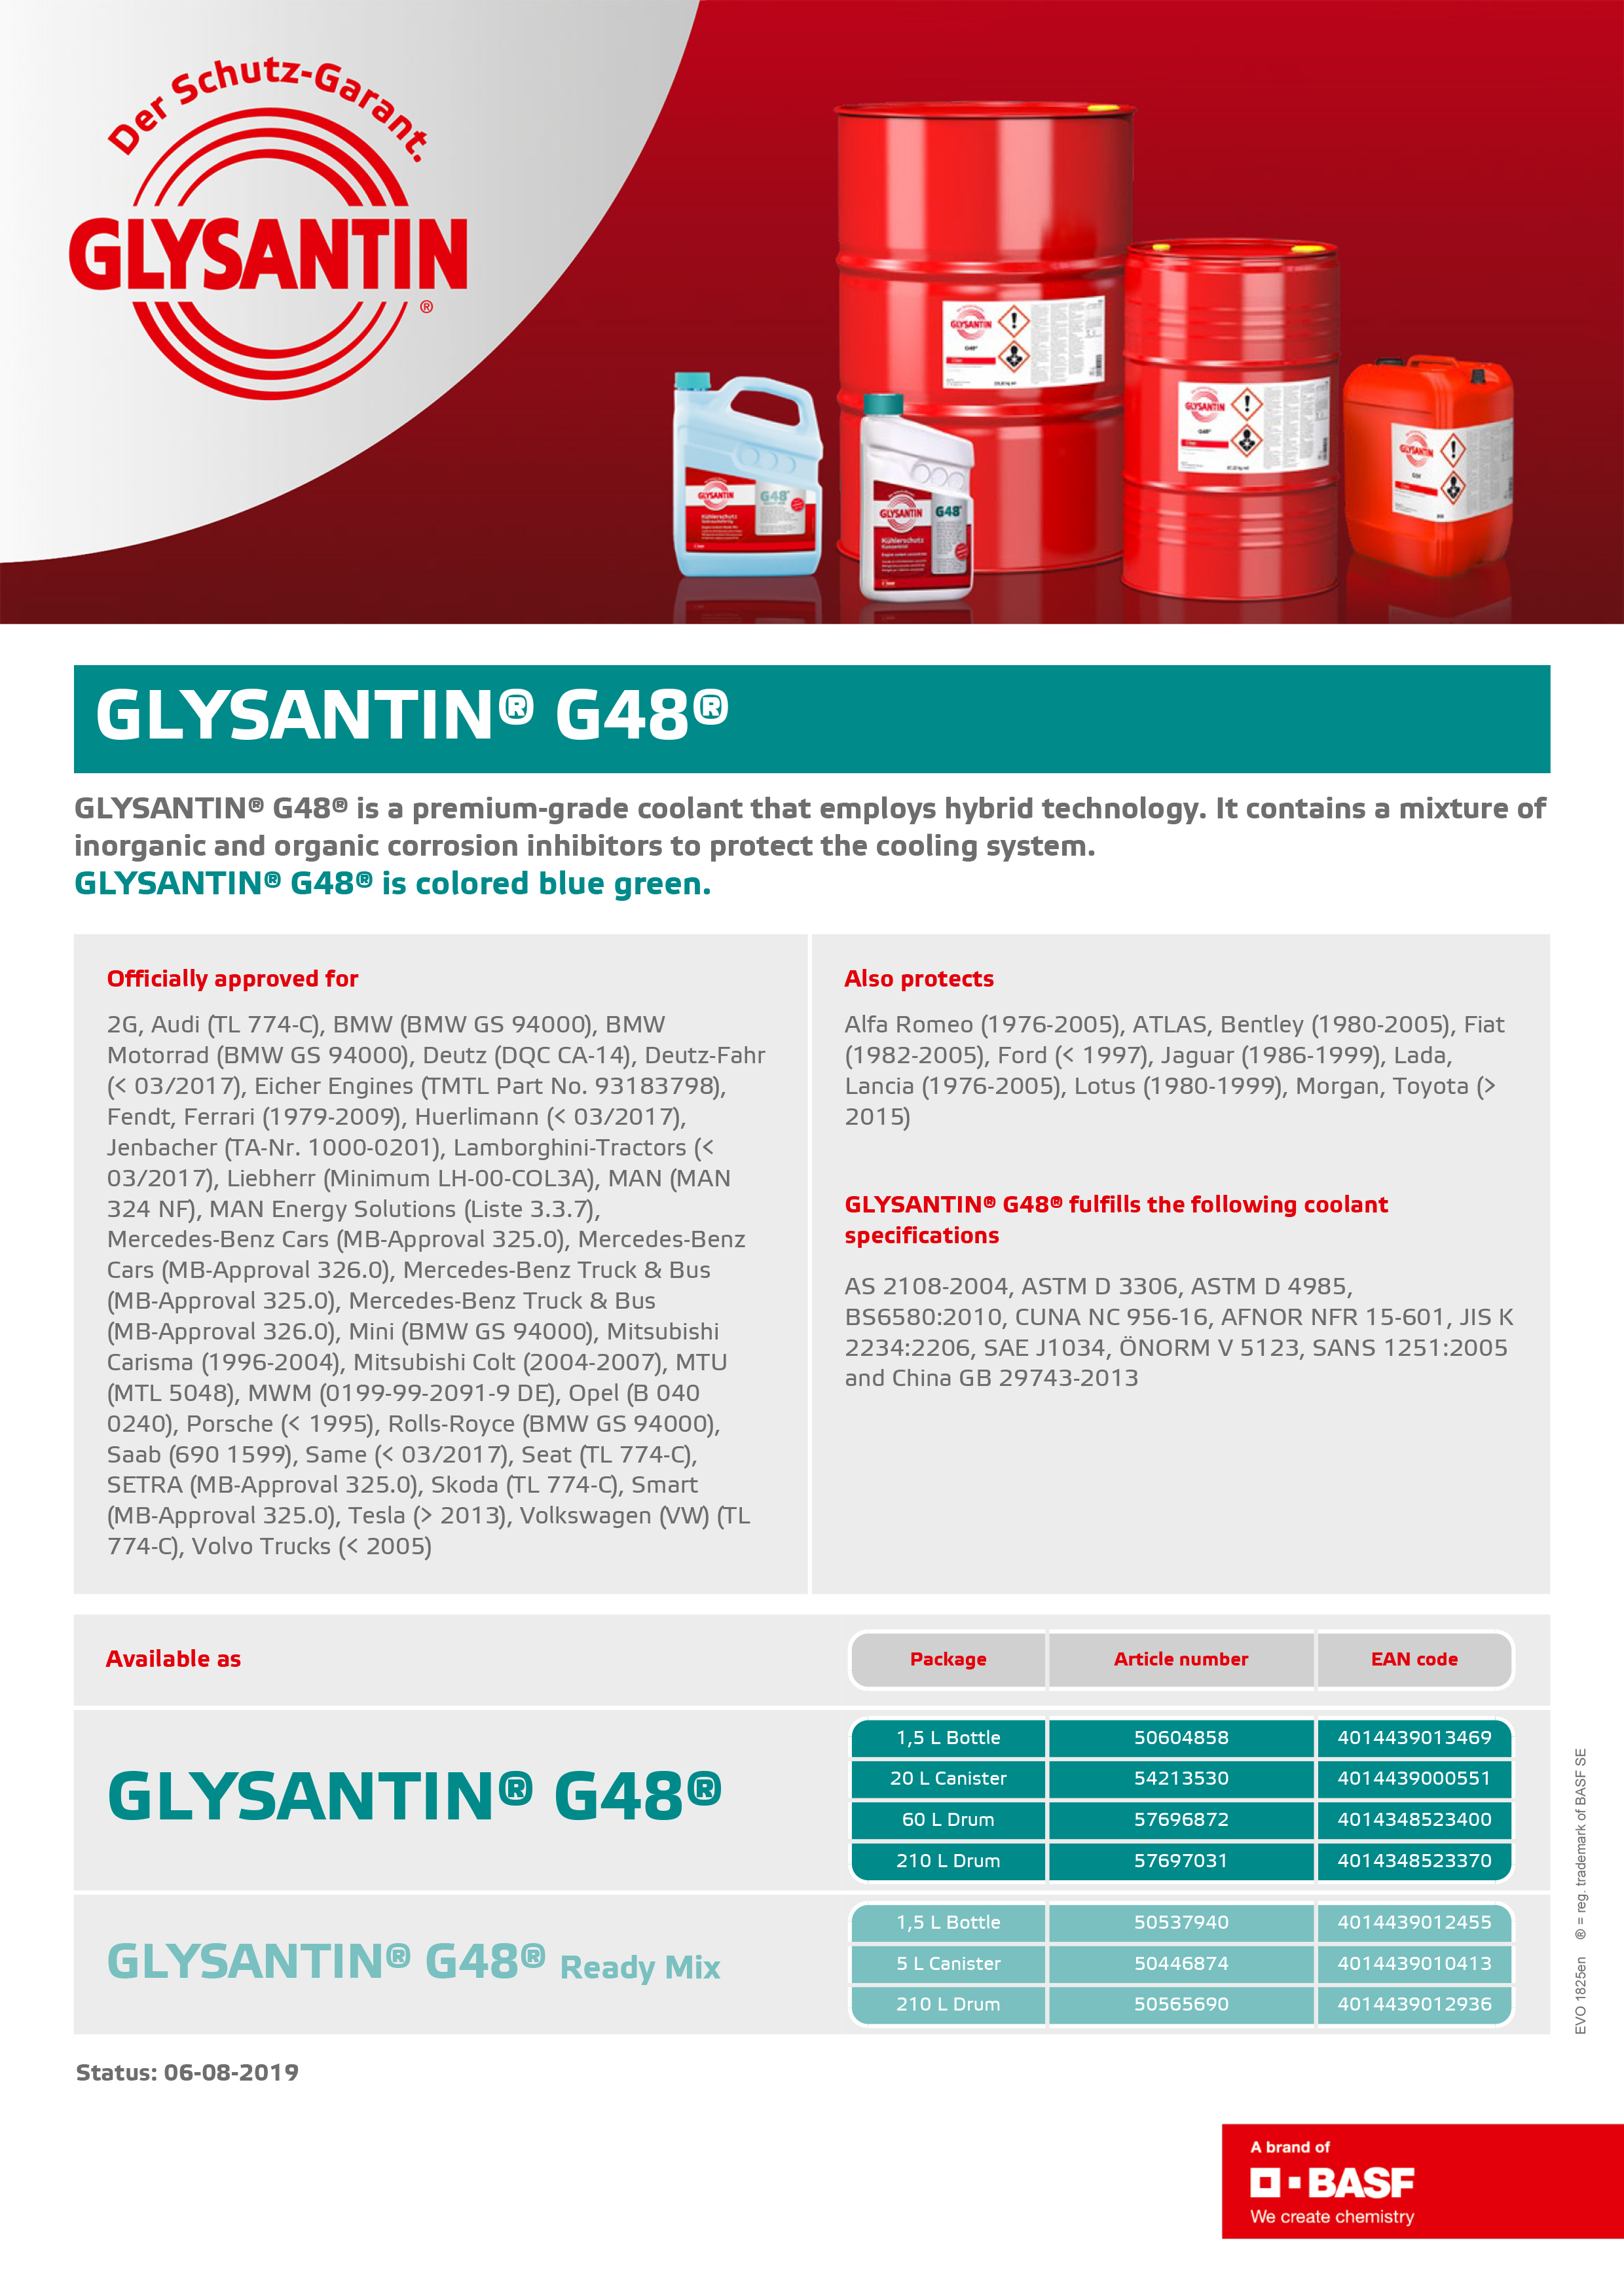 Glysantin G48 Coolant น้ำยาหล่อเย็น กันสนิมหม้อน้ำ (ฝาสีฟ้าอมเขียว) 1.5  ลิตร – ใช้กับรถยุโรป - 2amconnection